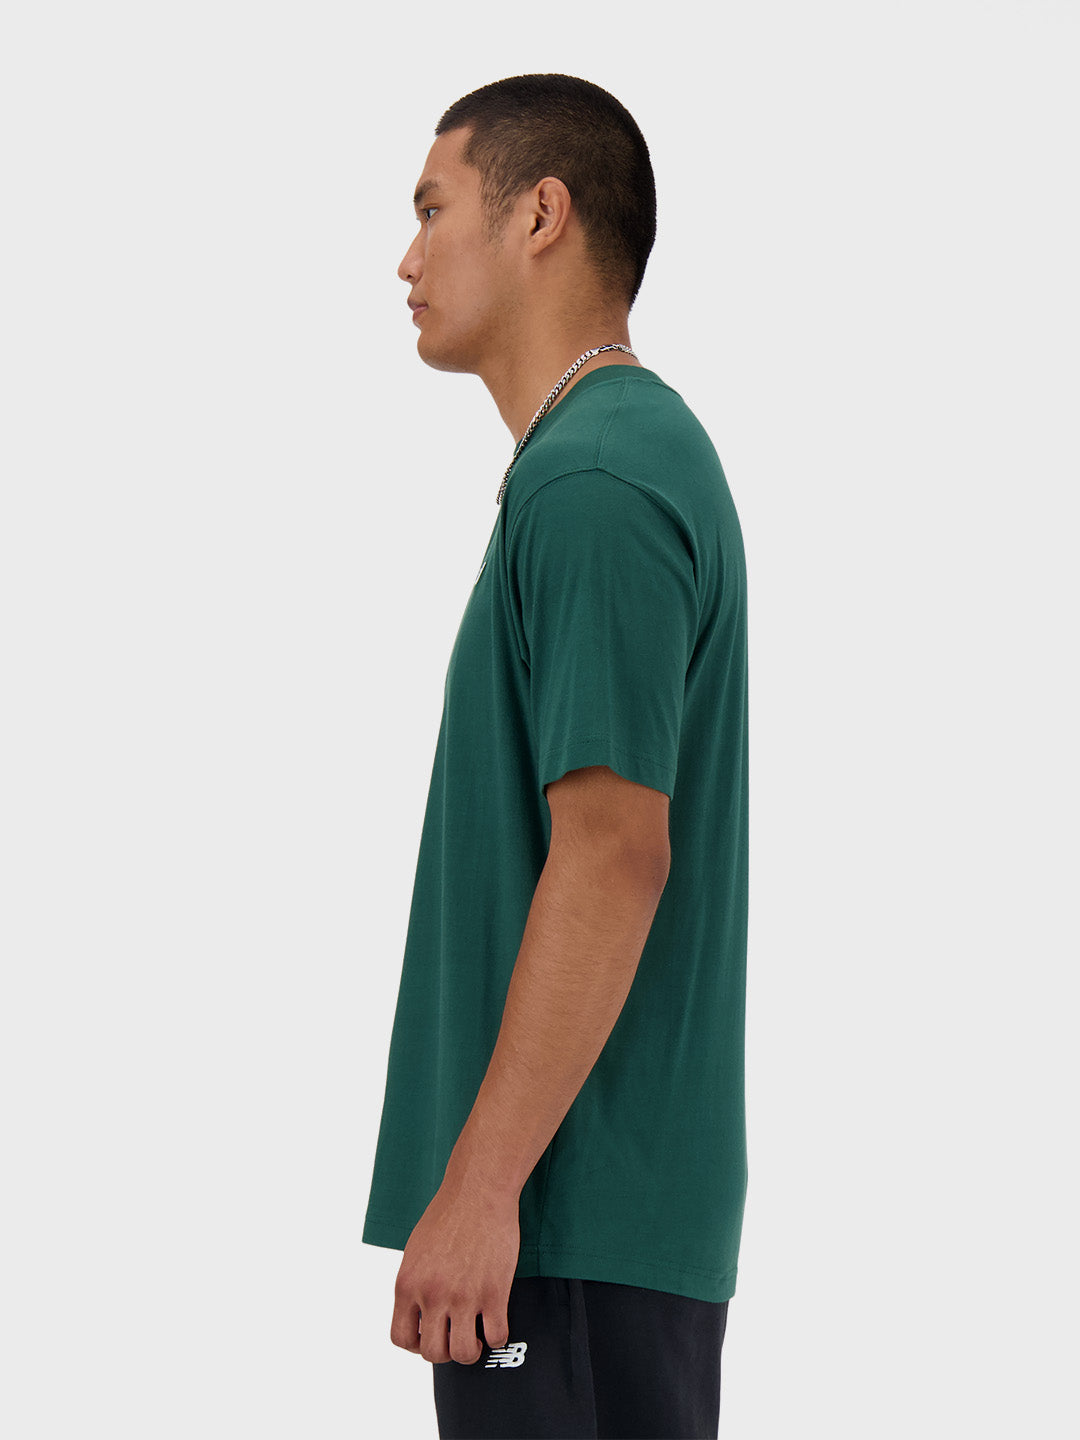 new balance t-shirt green